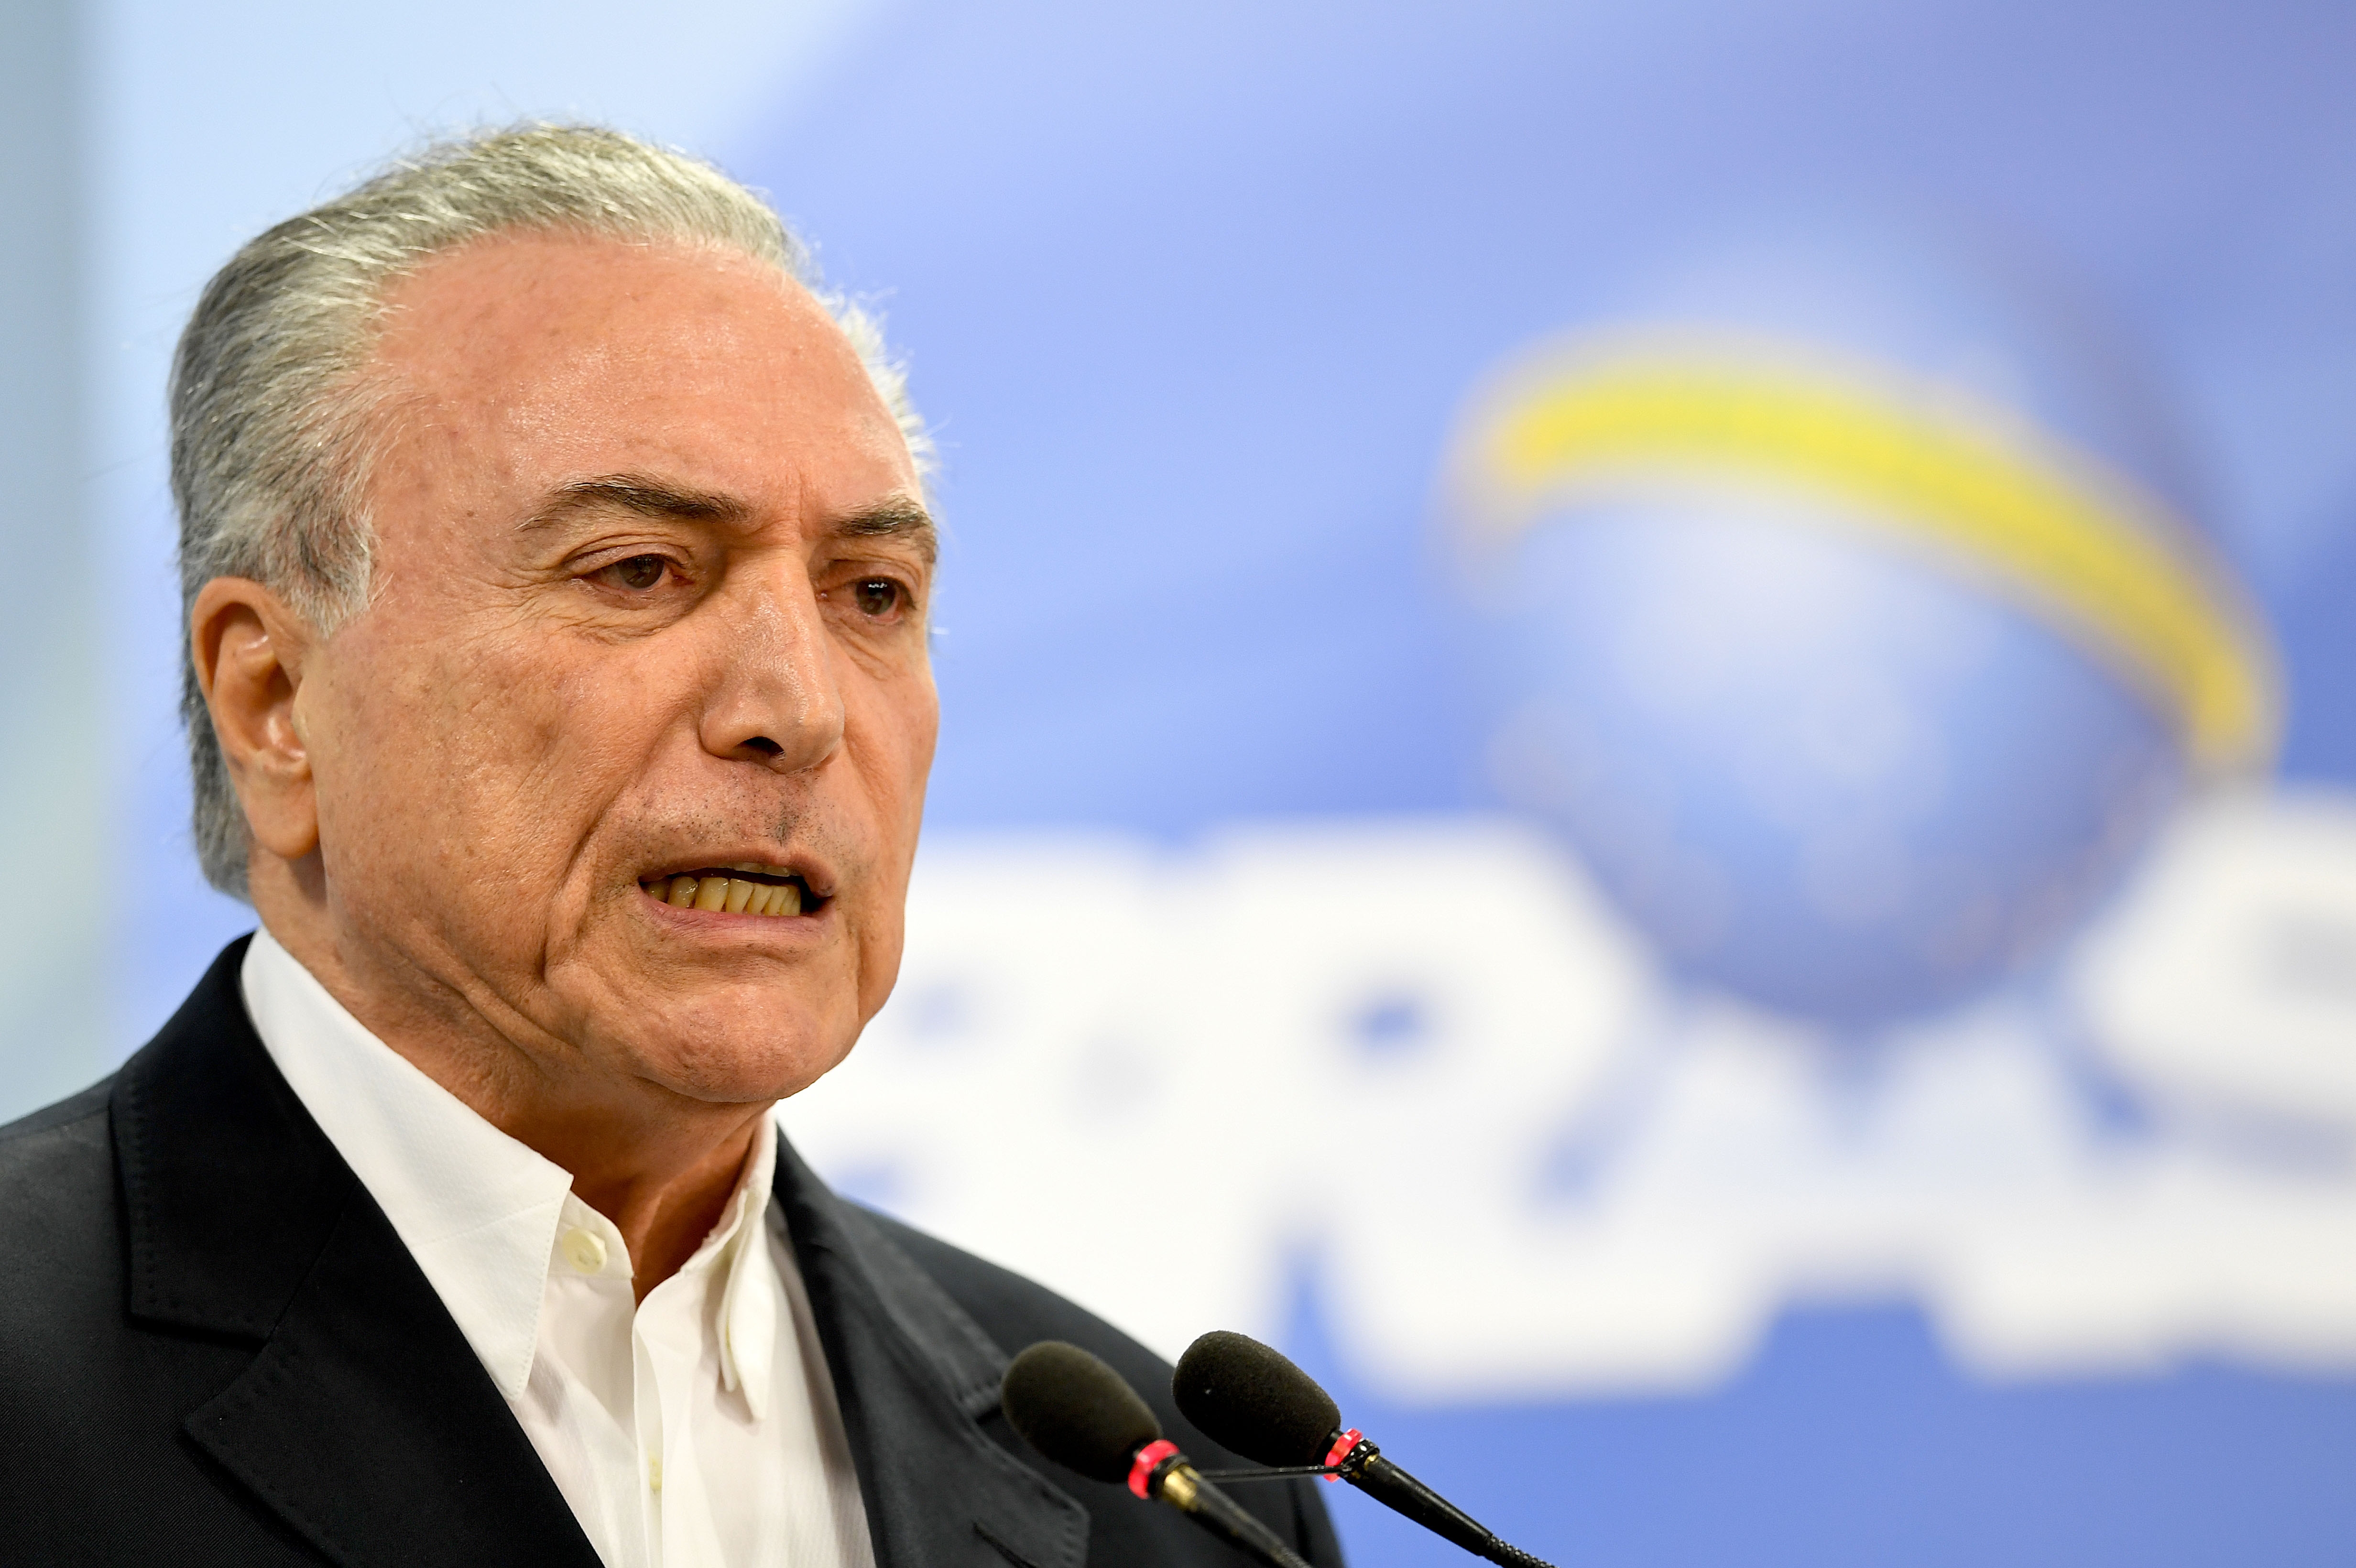  Nueva crisis en Brasil: ¿Temer va camino a su destitución? (ii)